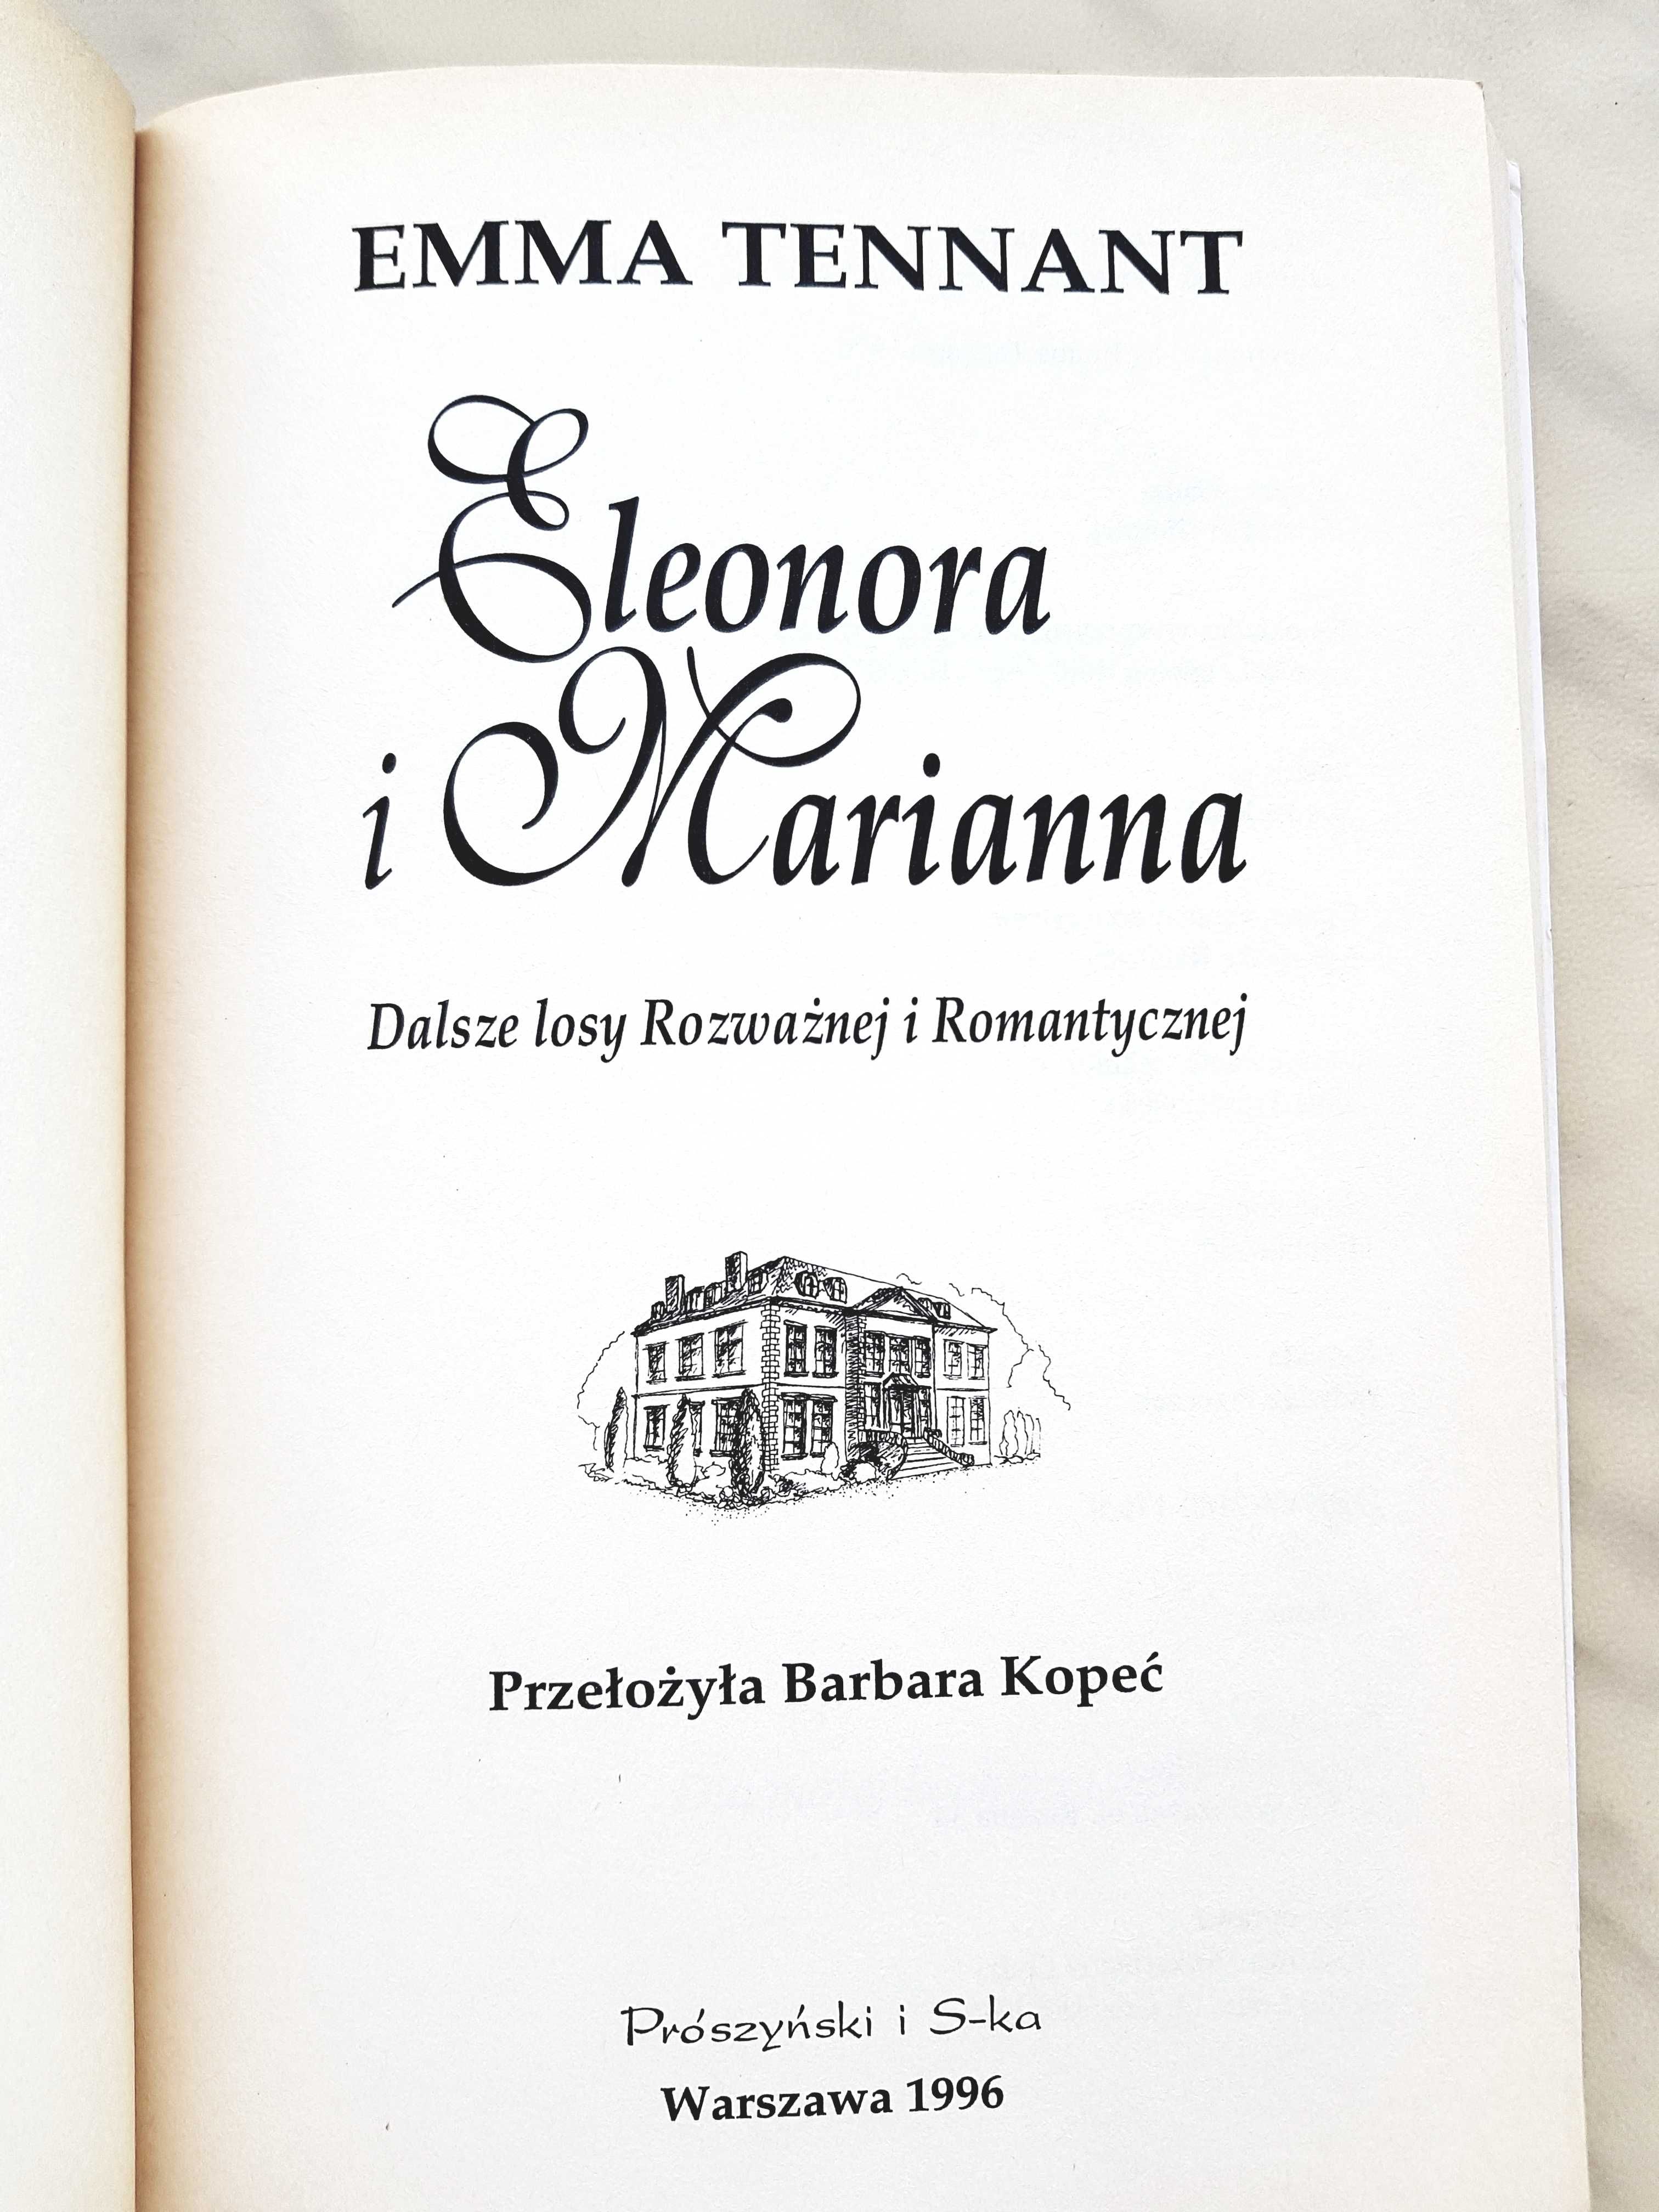 Sprzedam książkę "Eleonora i Marianna" Emmy Tennant